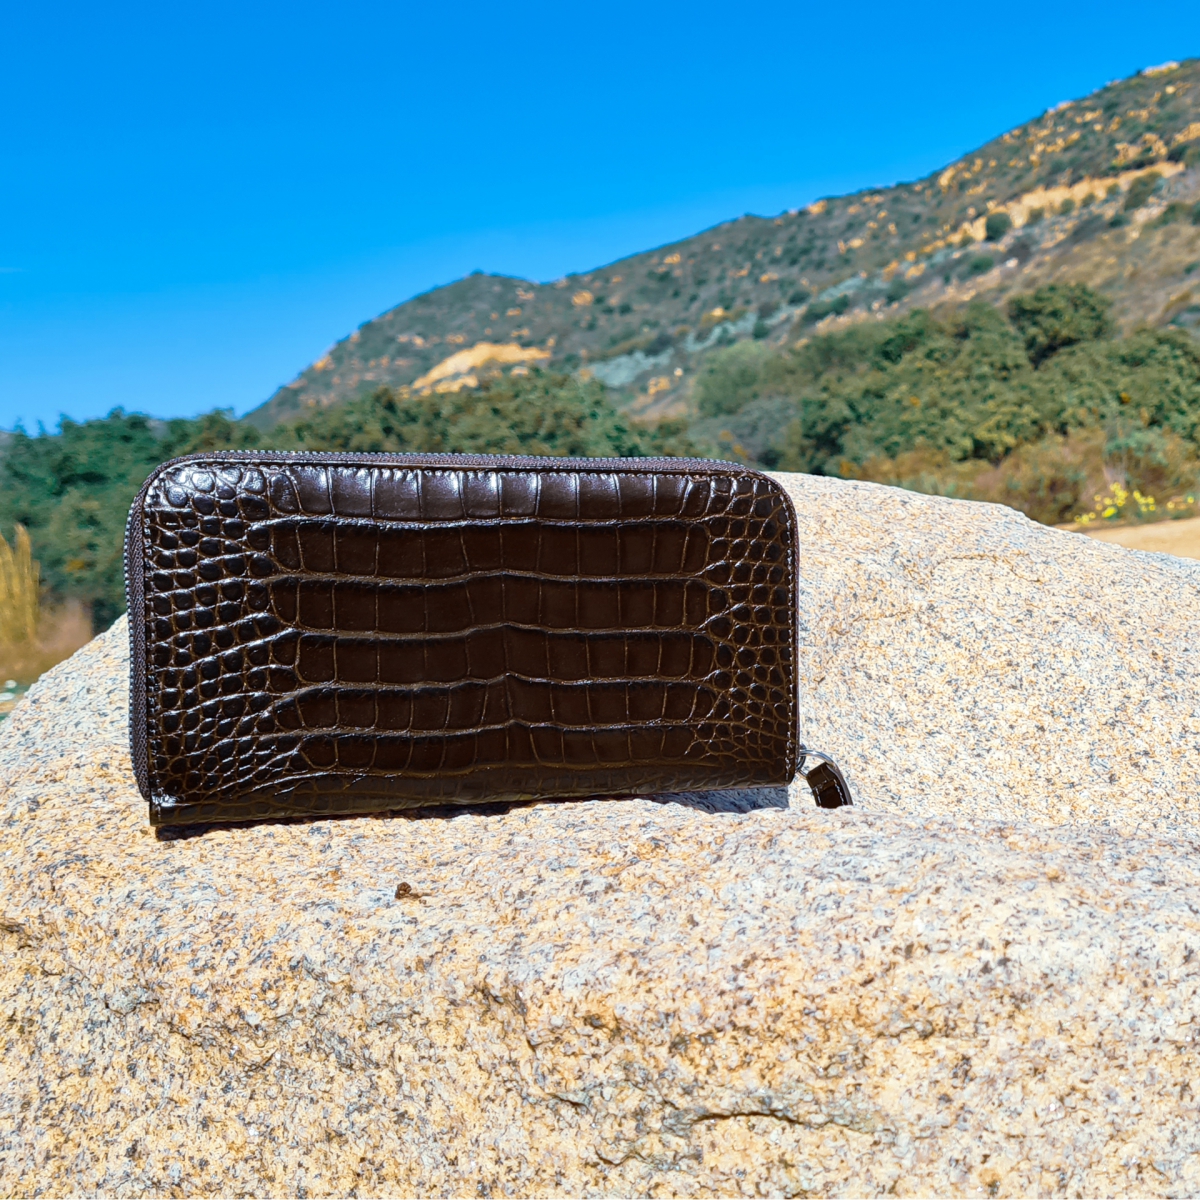 BRUCLE Elegant women's wallet with zip in crocodile print leather, dark brown